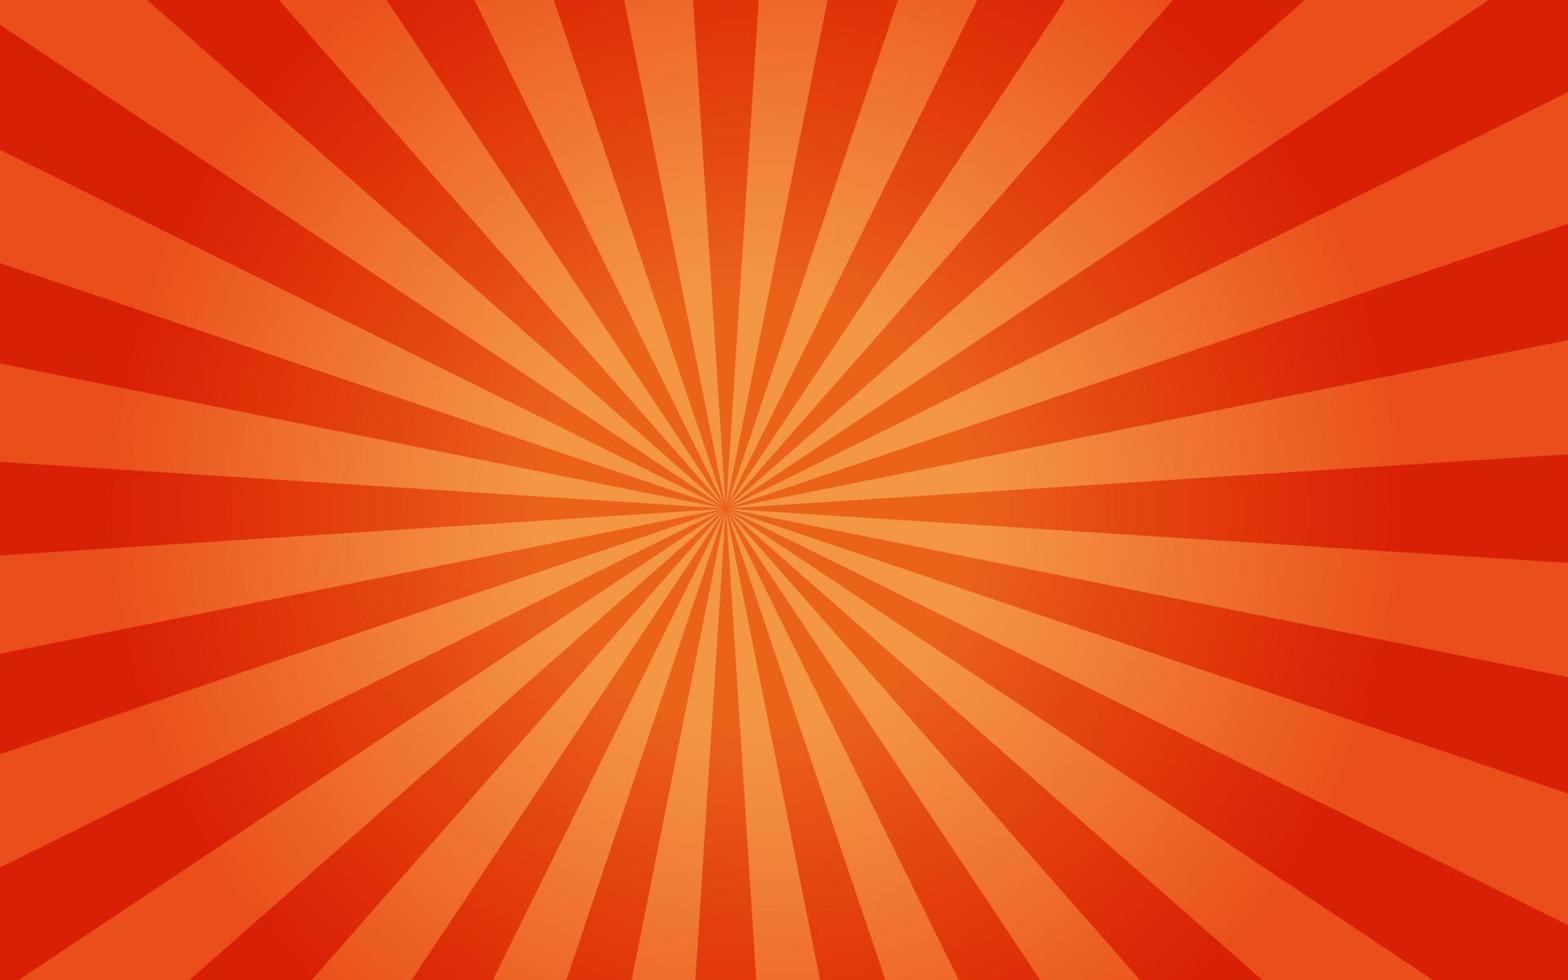 rayons de soleil style vintage rétro sur fond orange, fond de motif sunburst. des rayons. illustration vectorielle de bannière d'été. fond d'écran abstrait sunburst pour modèle de publicité sur les réseaux sociaux d'entreprise. vecteur